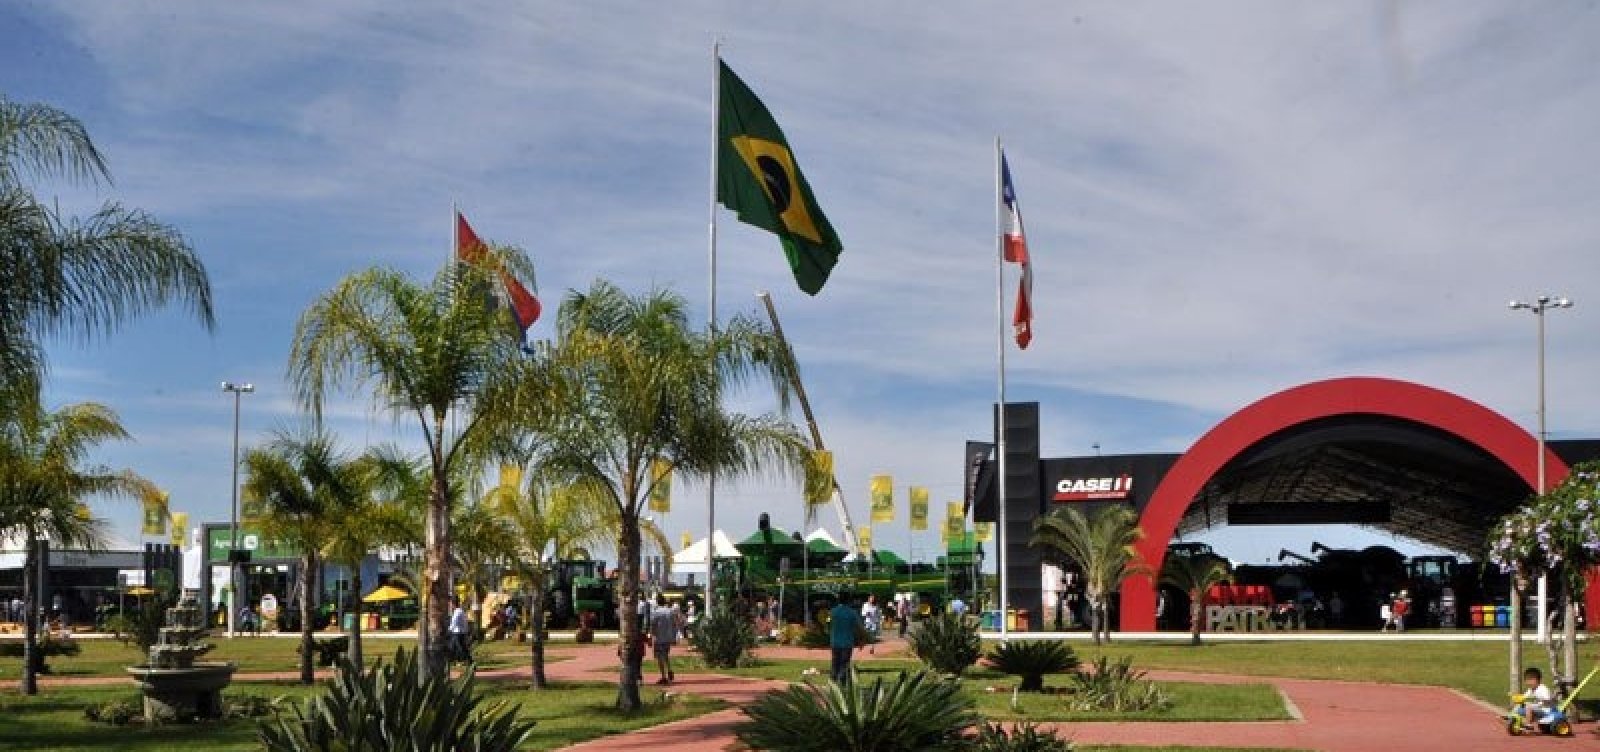 Bahia Farm Show 2018 registra mais de R$ 1,8 bilhão em negócios